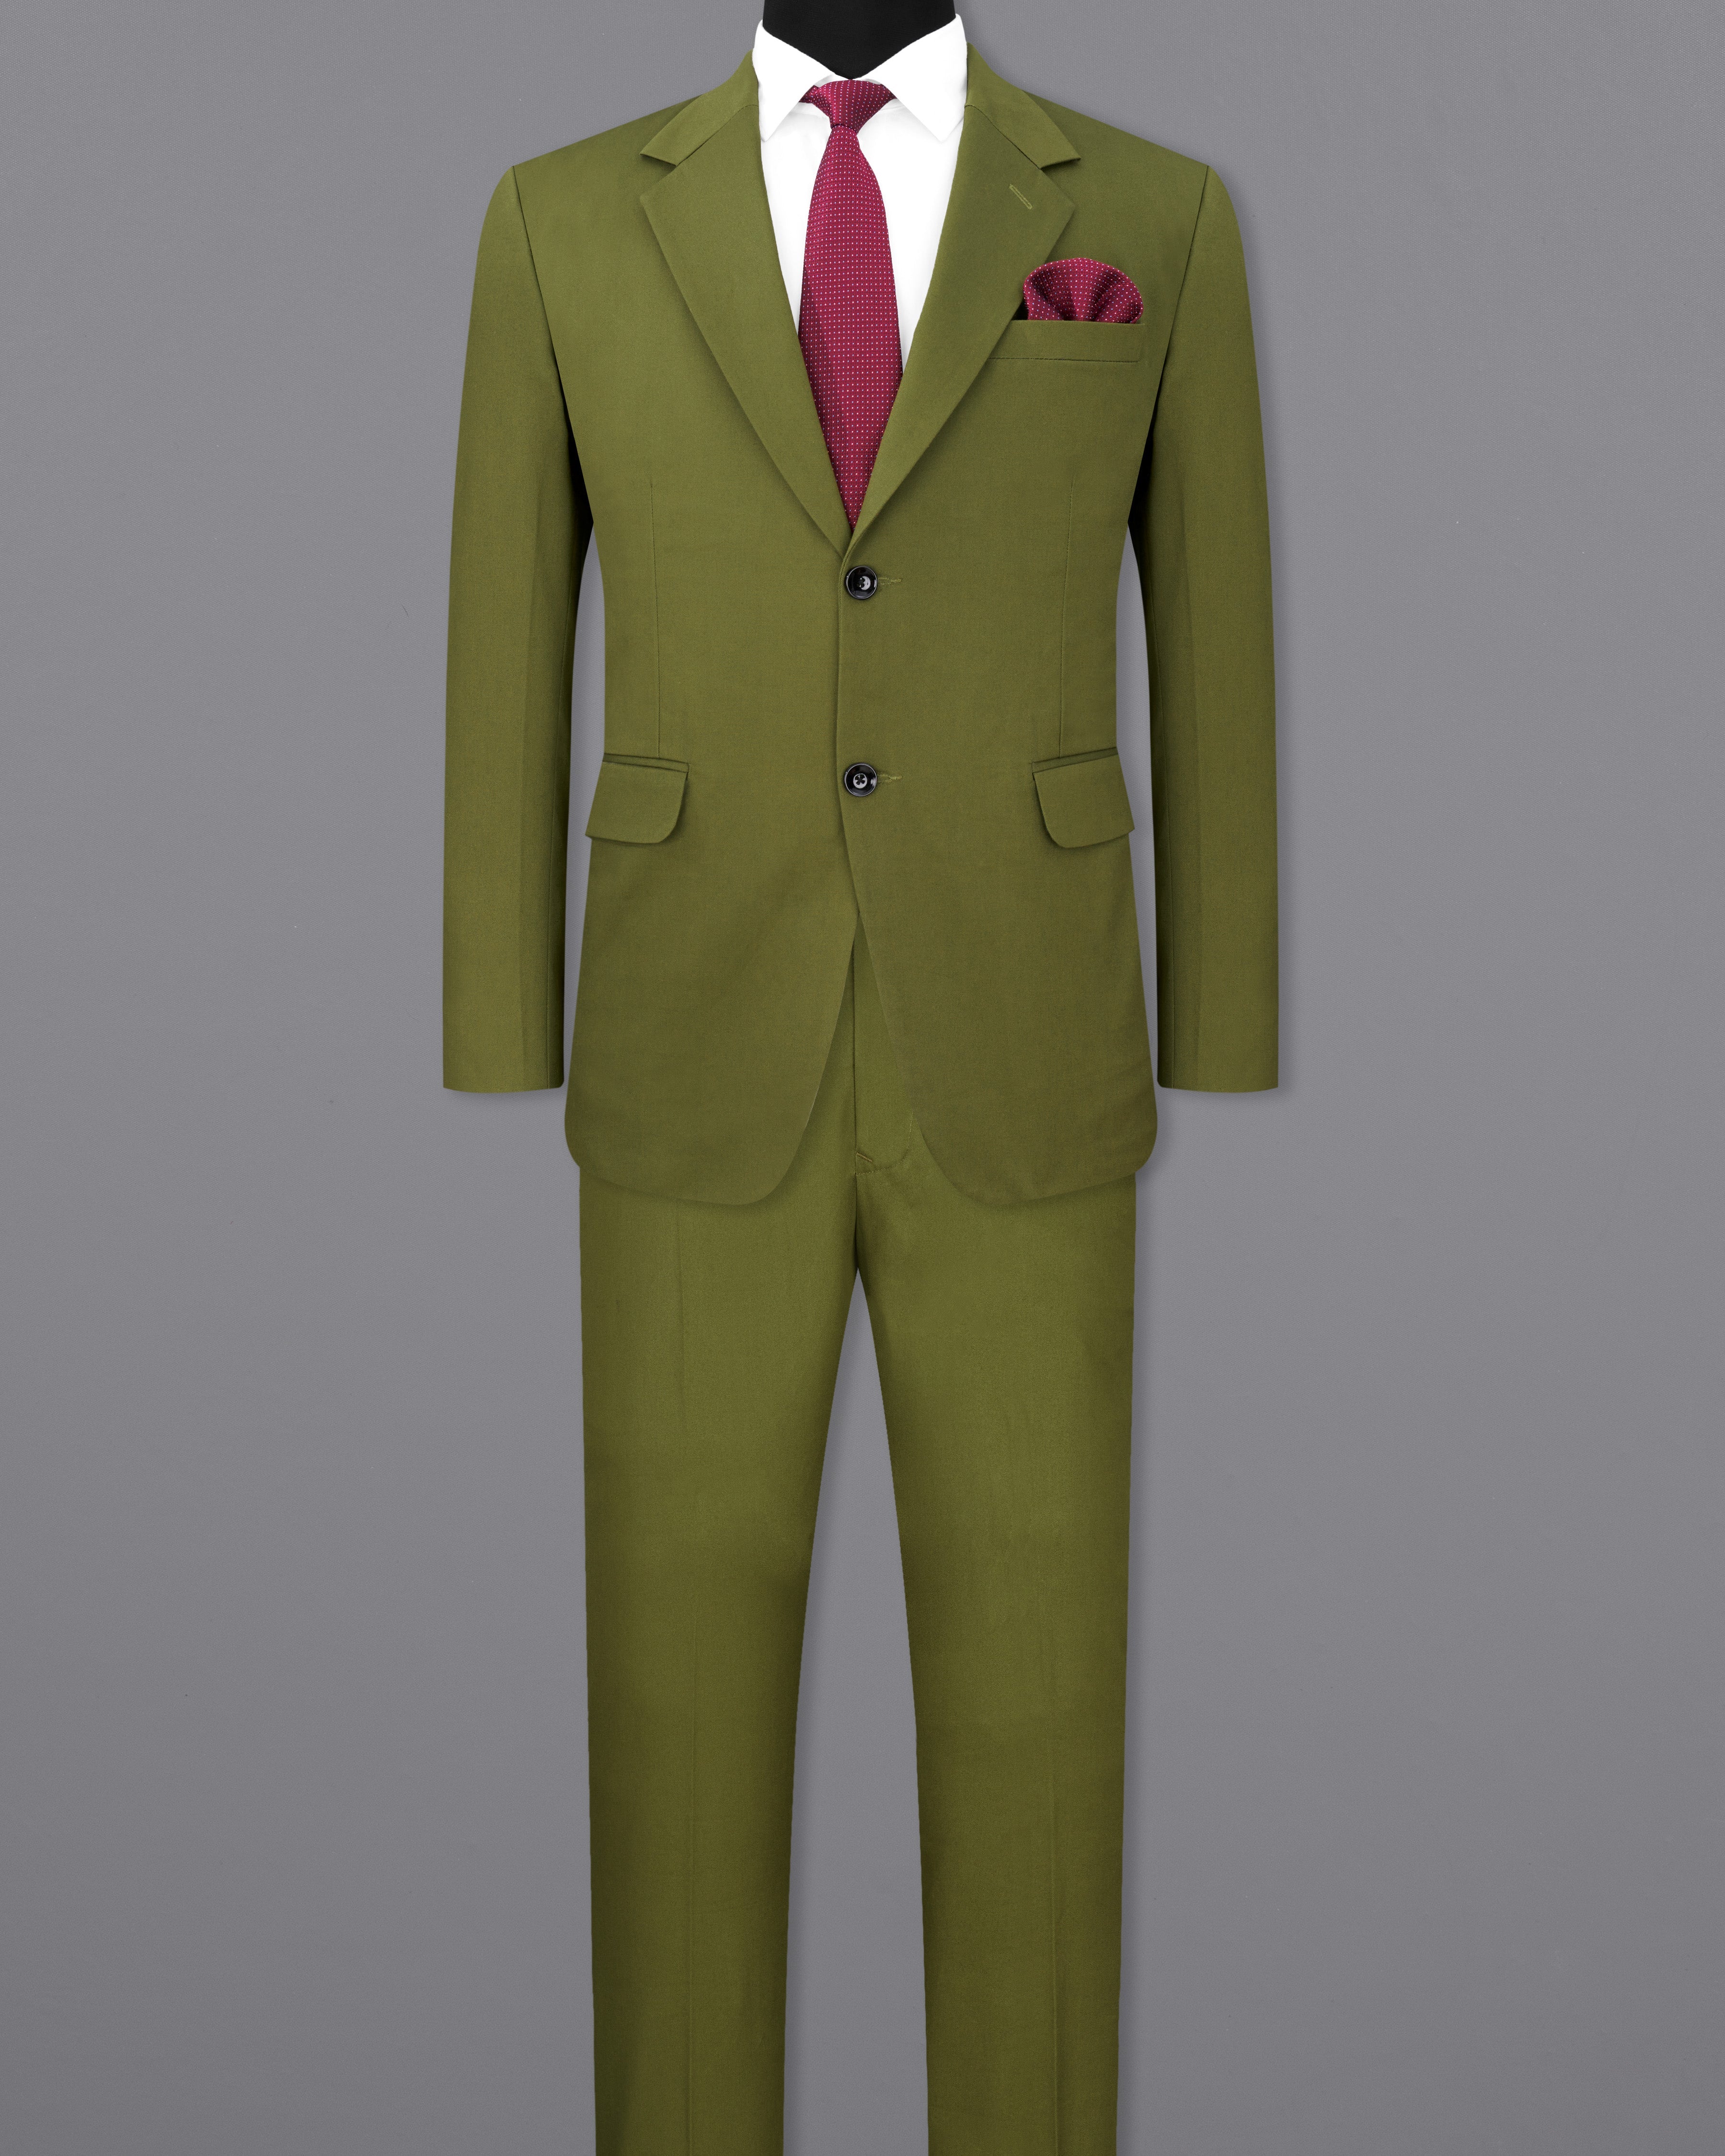 Saratoga Green Single Breasted Premium Cotton Suit ST2317-SB-36, ST2317-SB-38, ST2317-SB-40, ST2317-SB-42, ST2317-SB-44, ST2317-SB-46, ST2317-SB-48, ST2317-SB-50, ST2317-SB-52, ST2317-SB-54, ST2317-SB-56, ST2317-SB-58, ST2317-SB-60